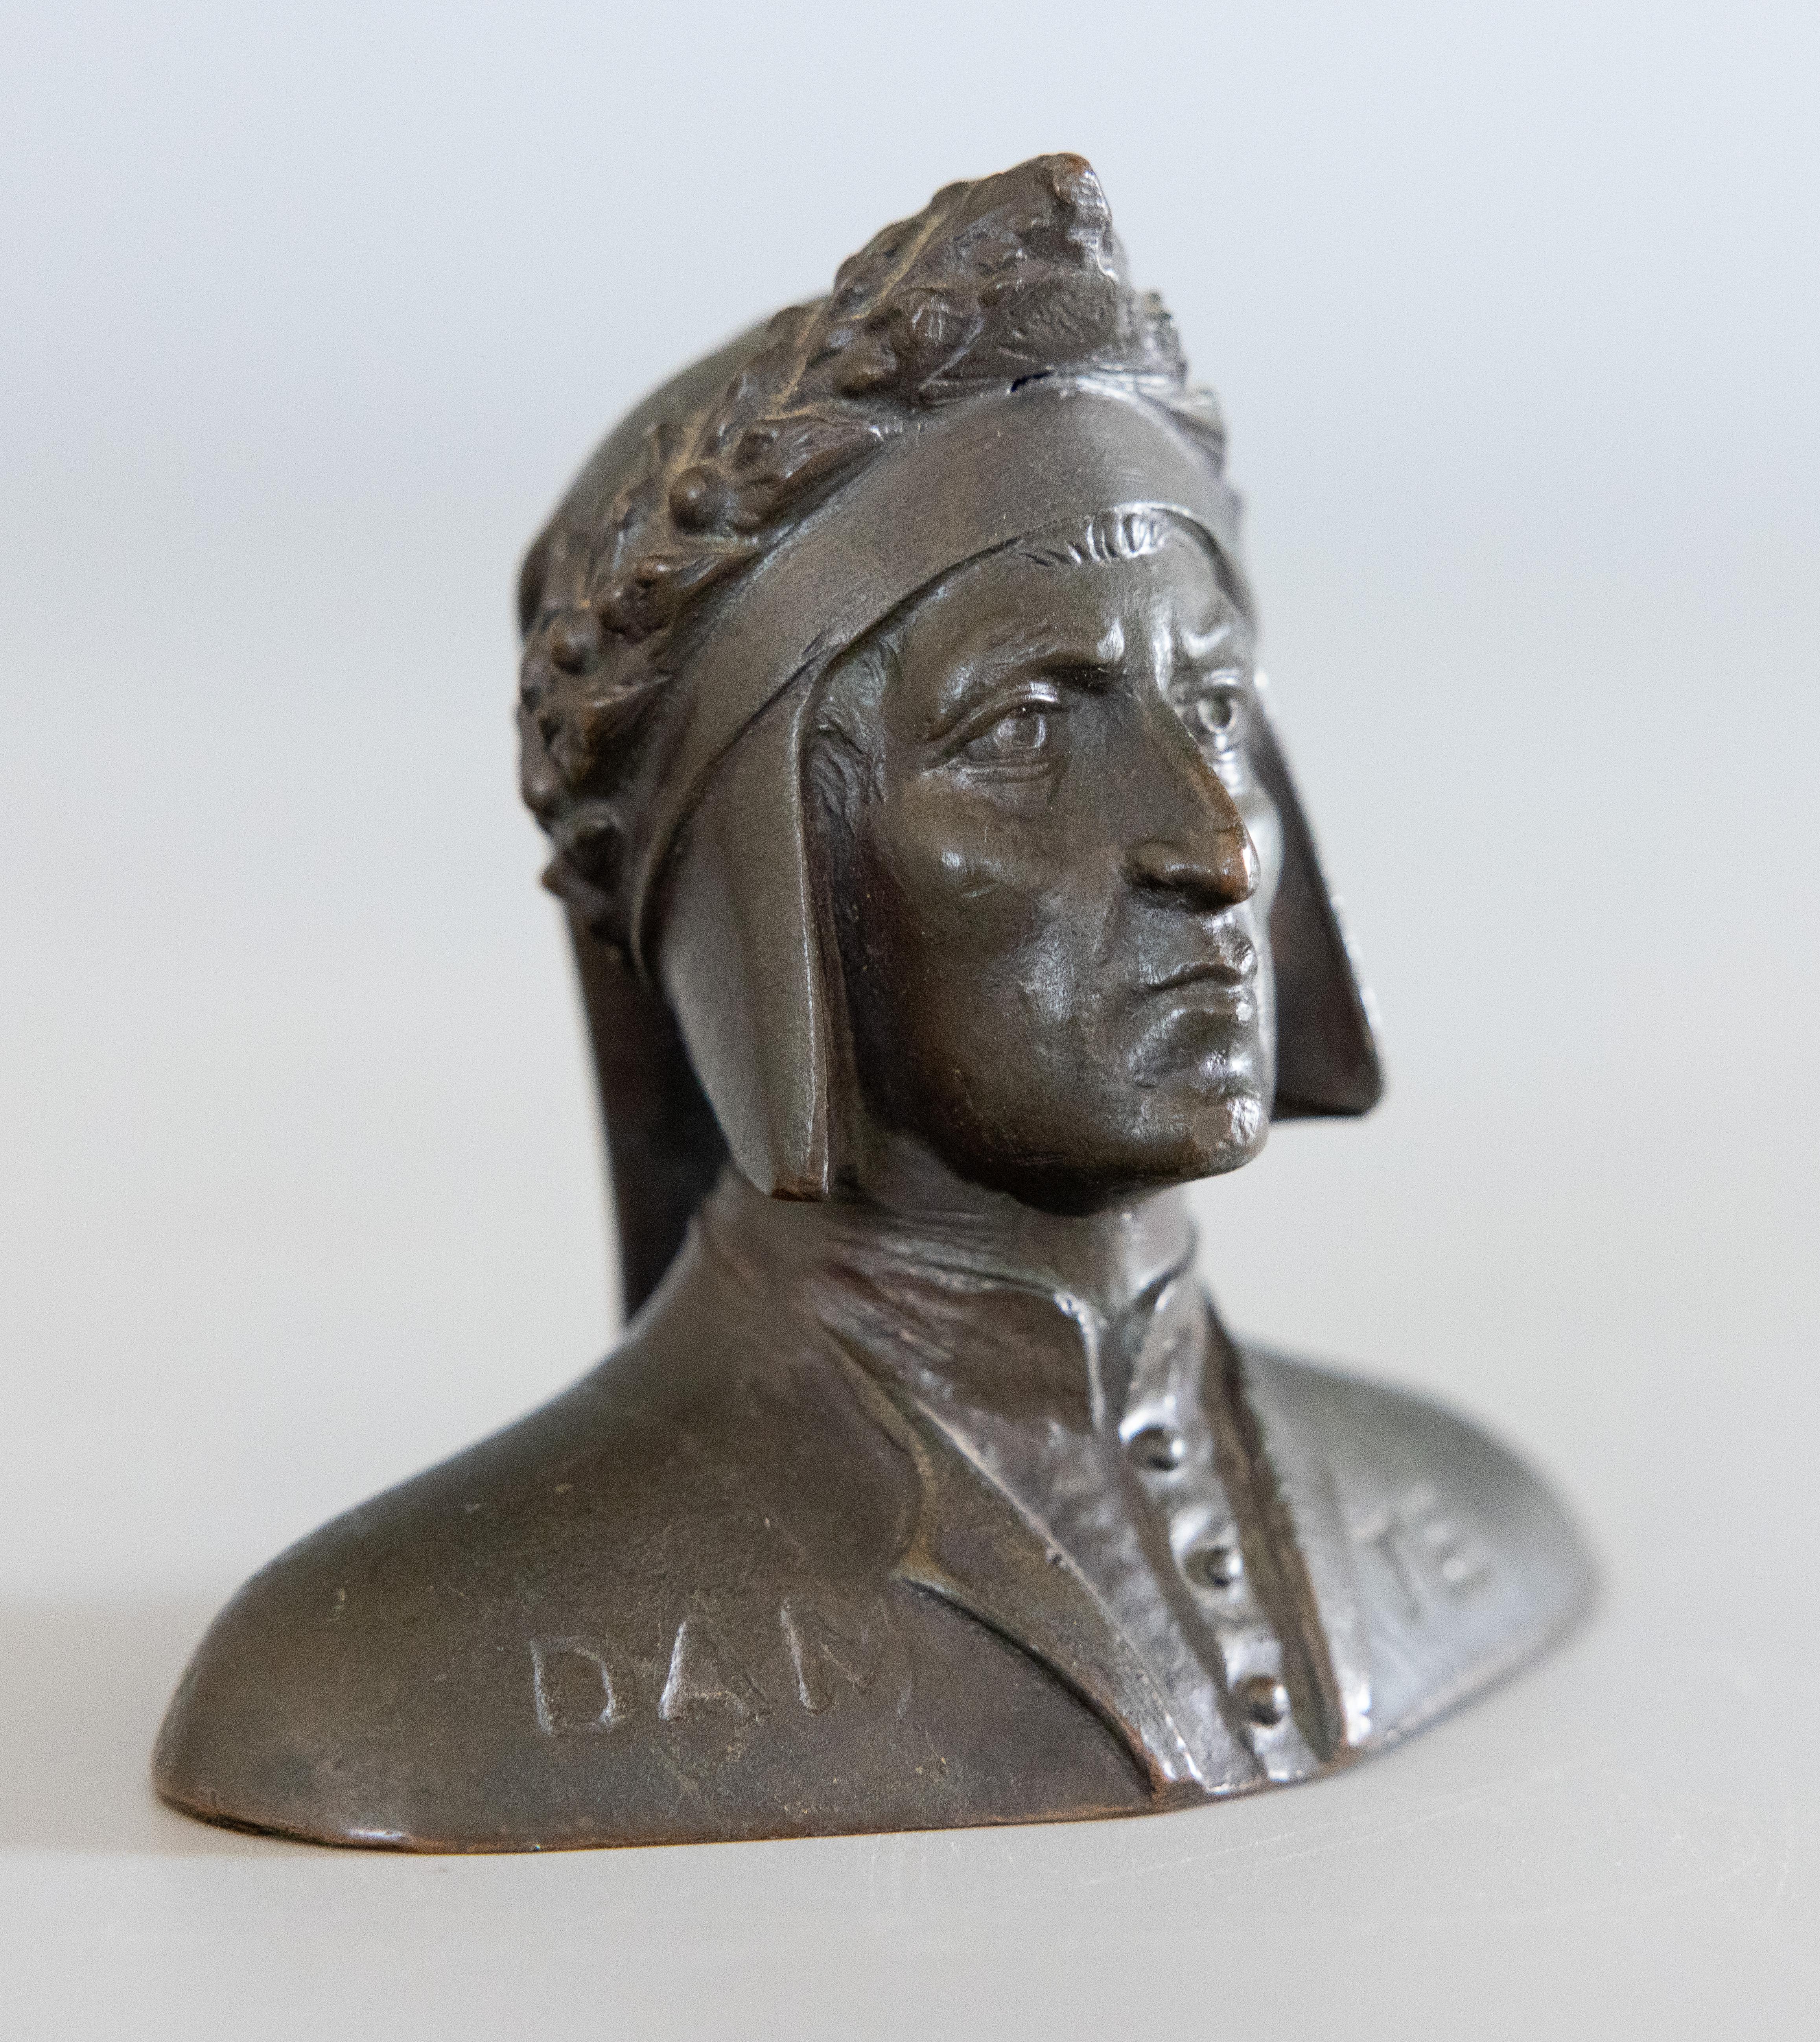 Magnifique buste en bronze du poète italien Dante Alighieri, souvenir du Grand Tour du 19e siècle. Ce beau buste est bien moulé avec des détails exquis et une belle patine d'origine. Il serait parfait sur un bureau ou une étagère dans une